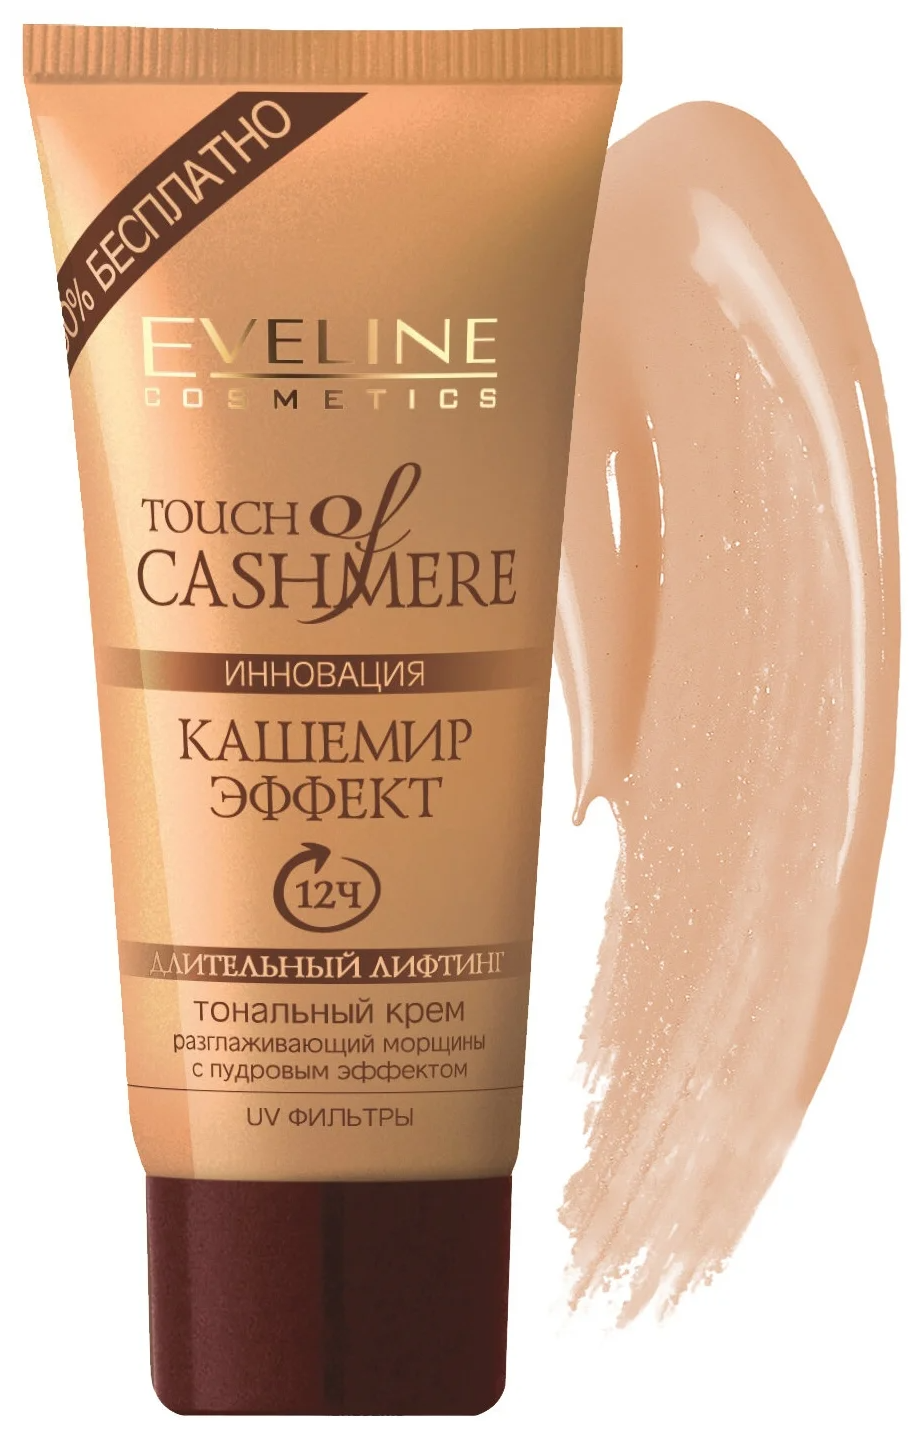 Eveline Cosmetics Тональный крем Touch of Cashmere